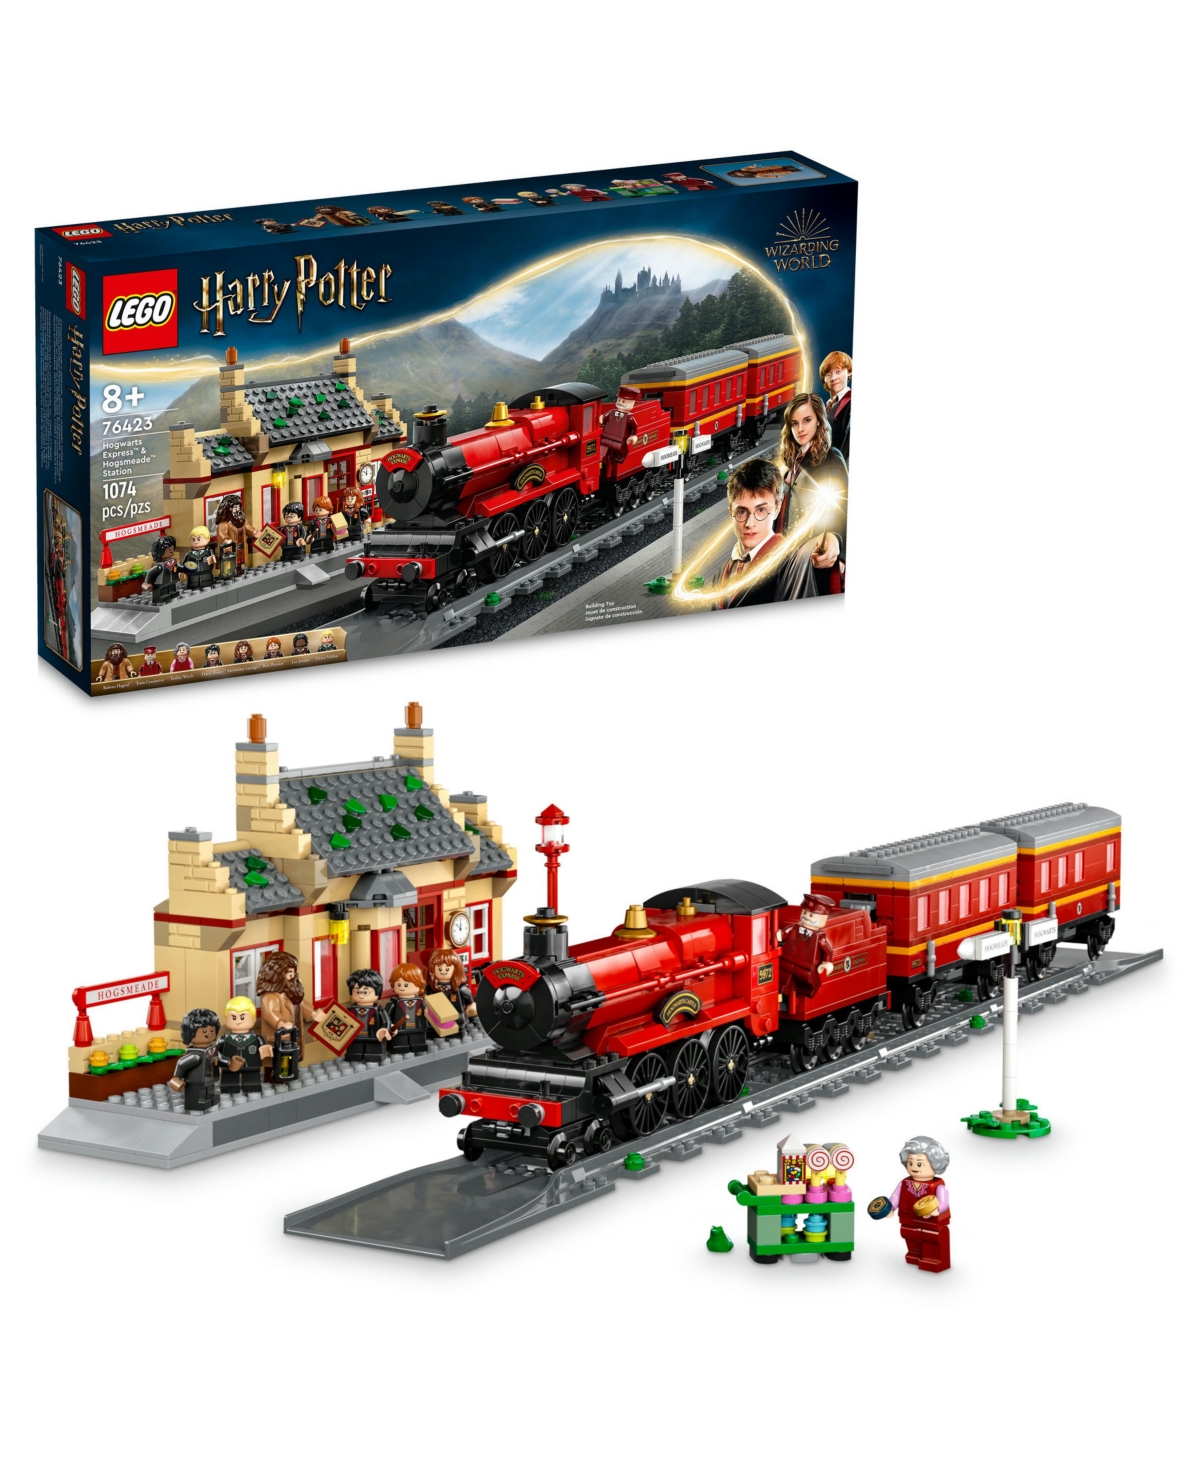 Lego Harry Potter 76423 Hogwarts Express Hogsmeade Station Toy Building Set In Multicolor